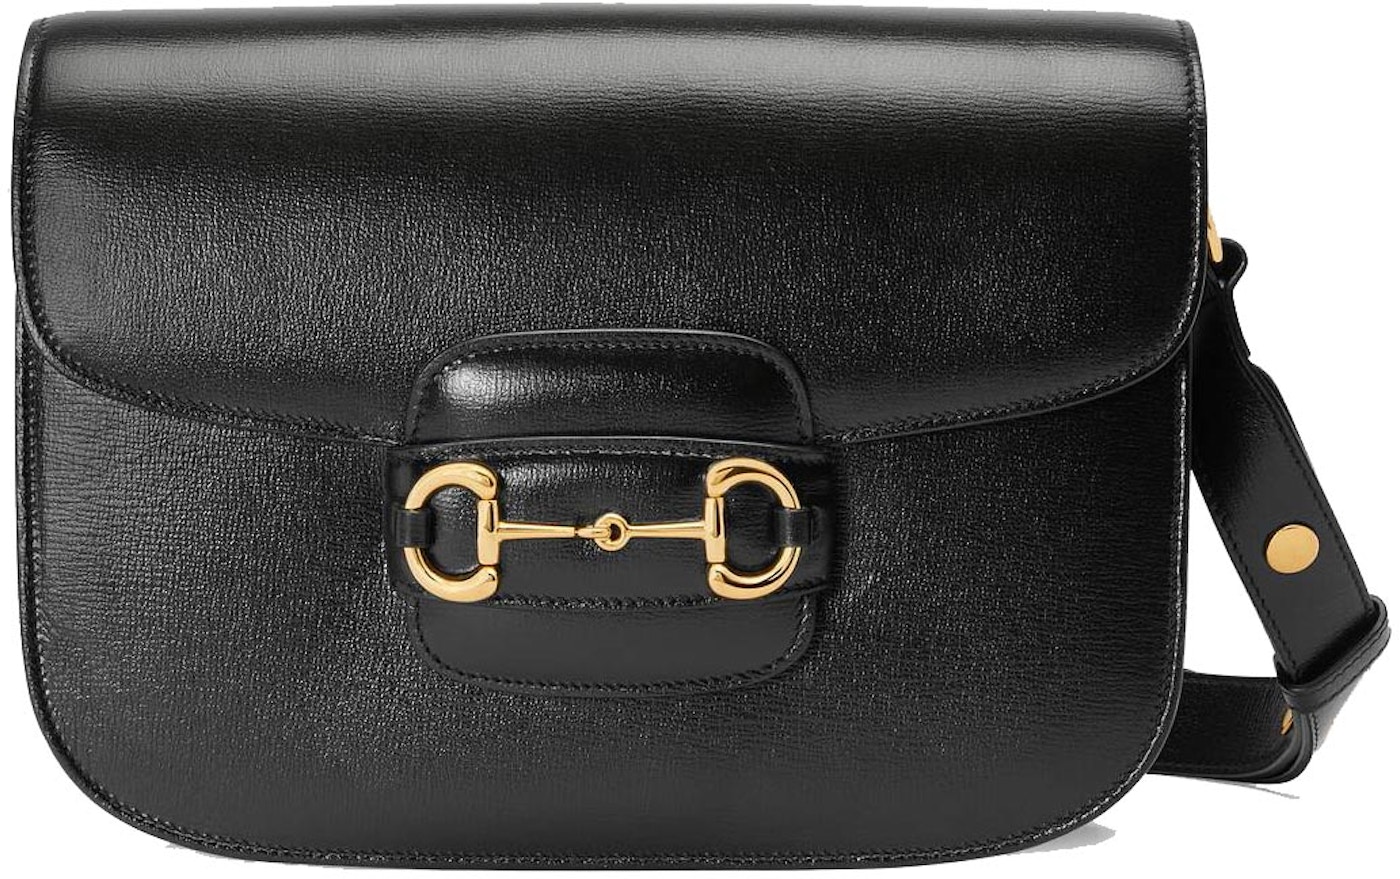 Vis stedet Kor Adgang Gucci 1955 Horsebit Shoulder Bag Small Black in Leather with Gold-tone